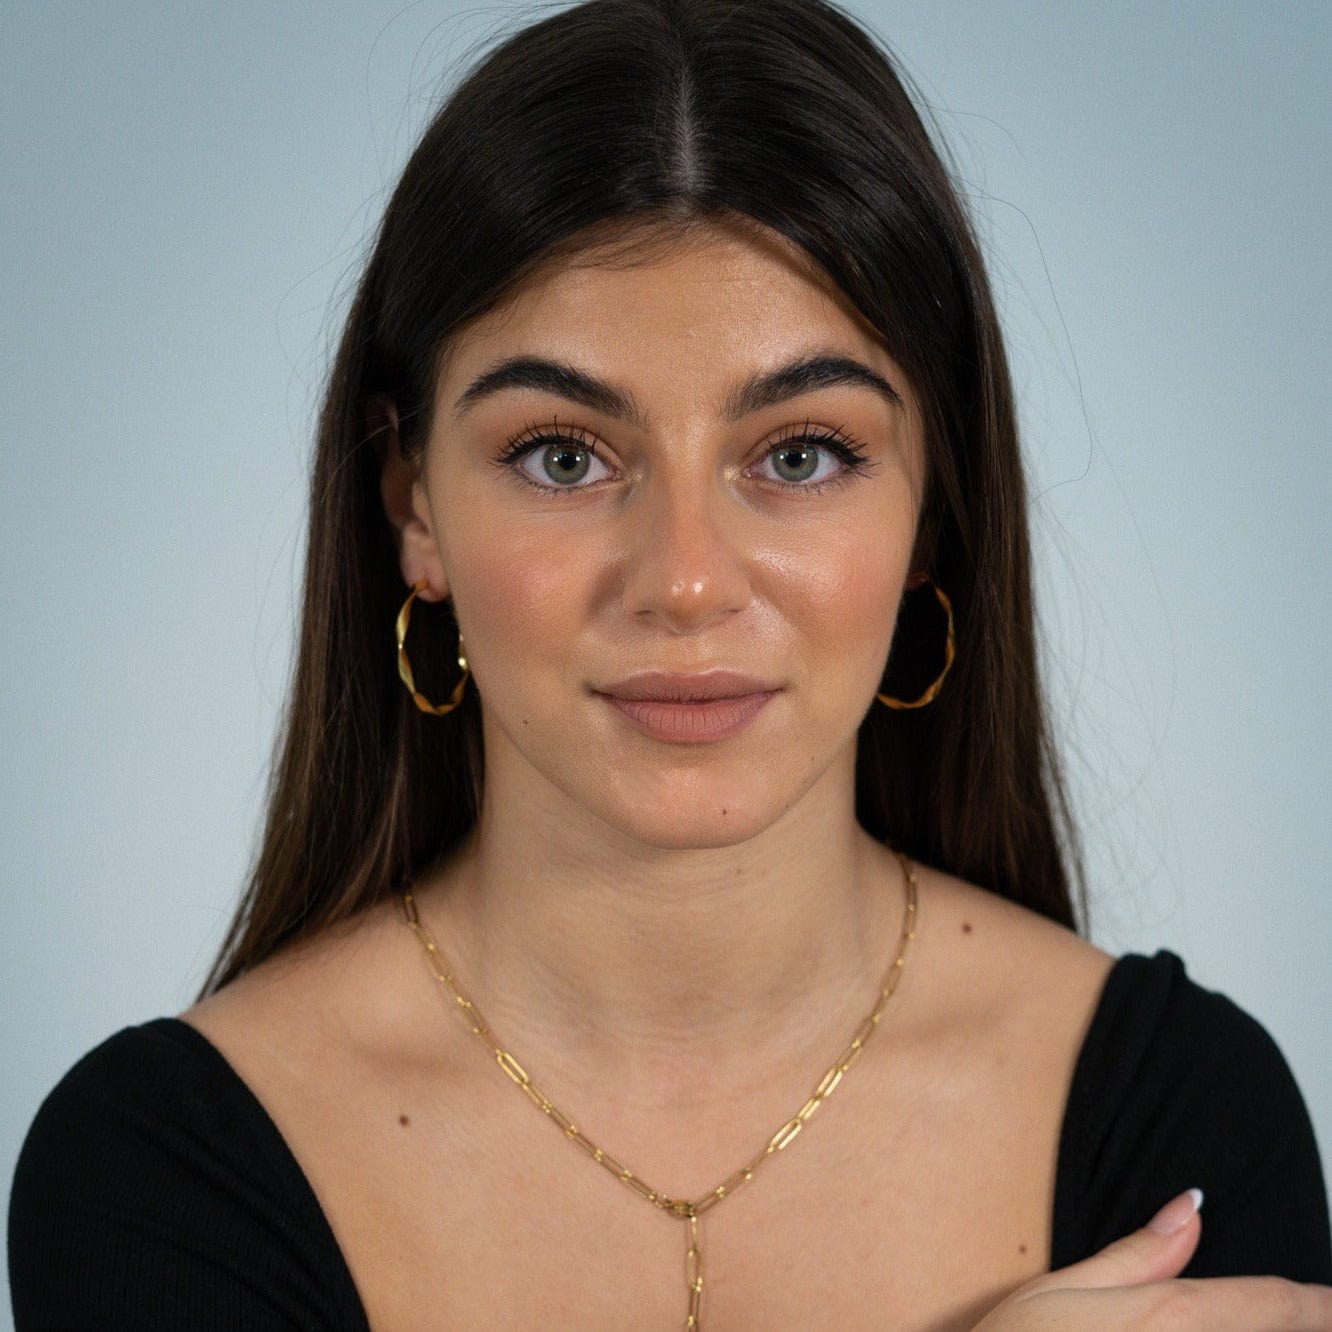 Lucy earrings